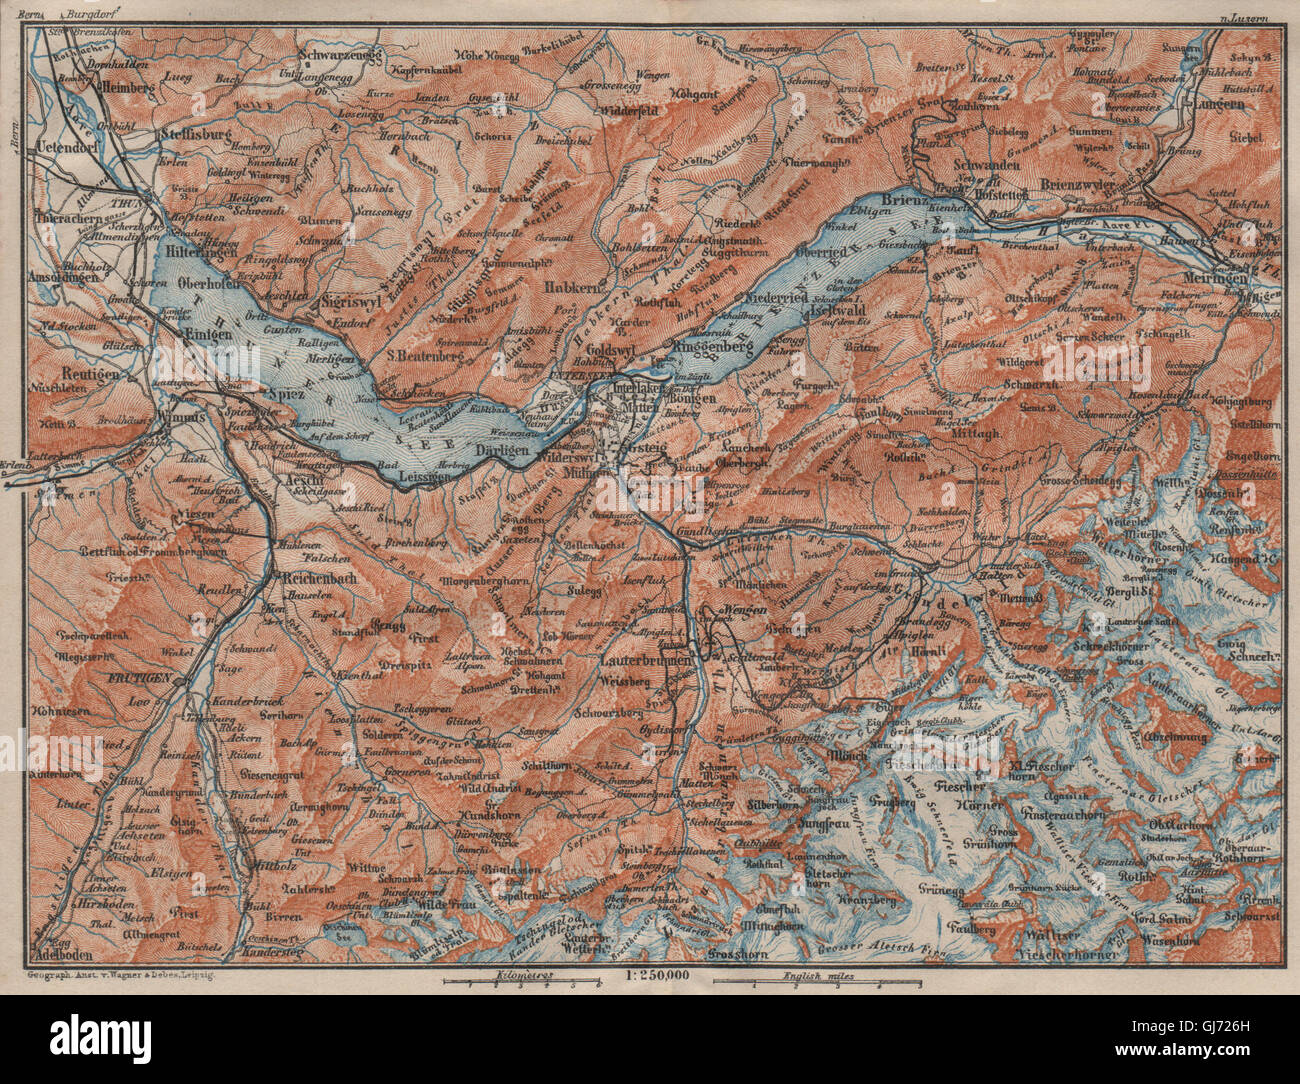 BERNESE OBERLAND. Wengen Mürren Grundelwald Reutigen Interlaken Eiger, 1911 map Stock Photo